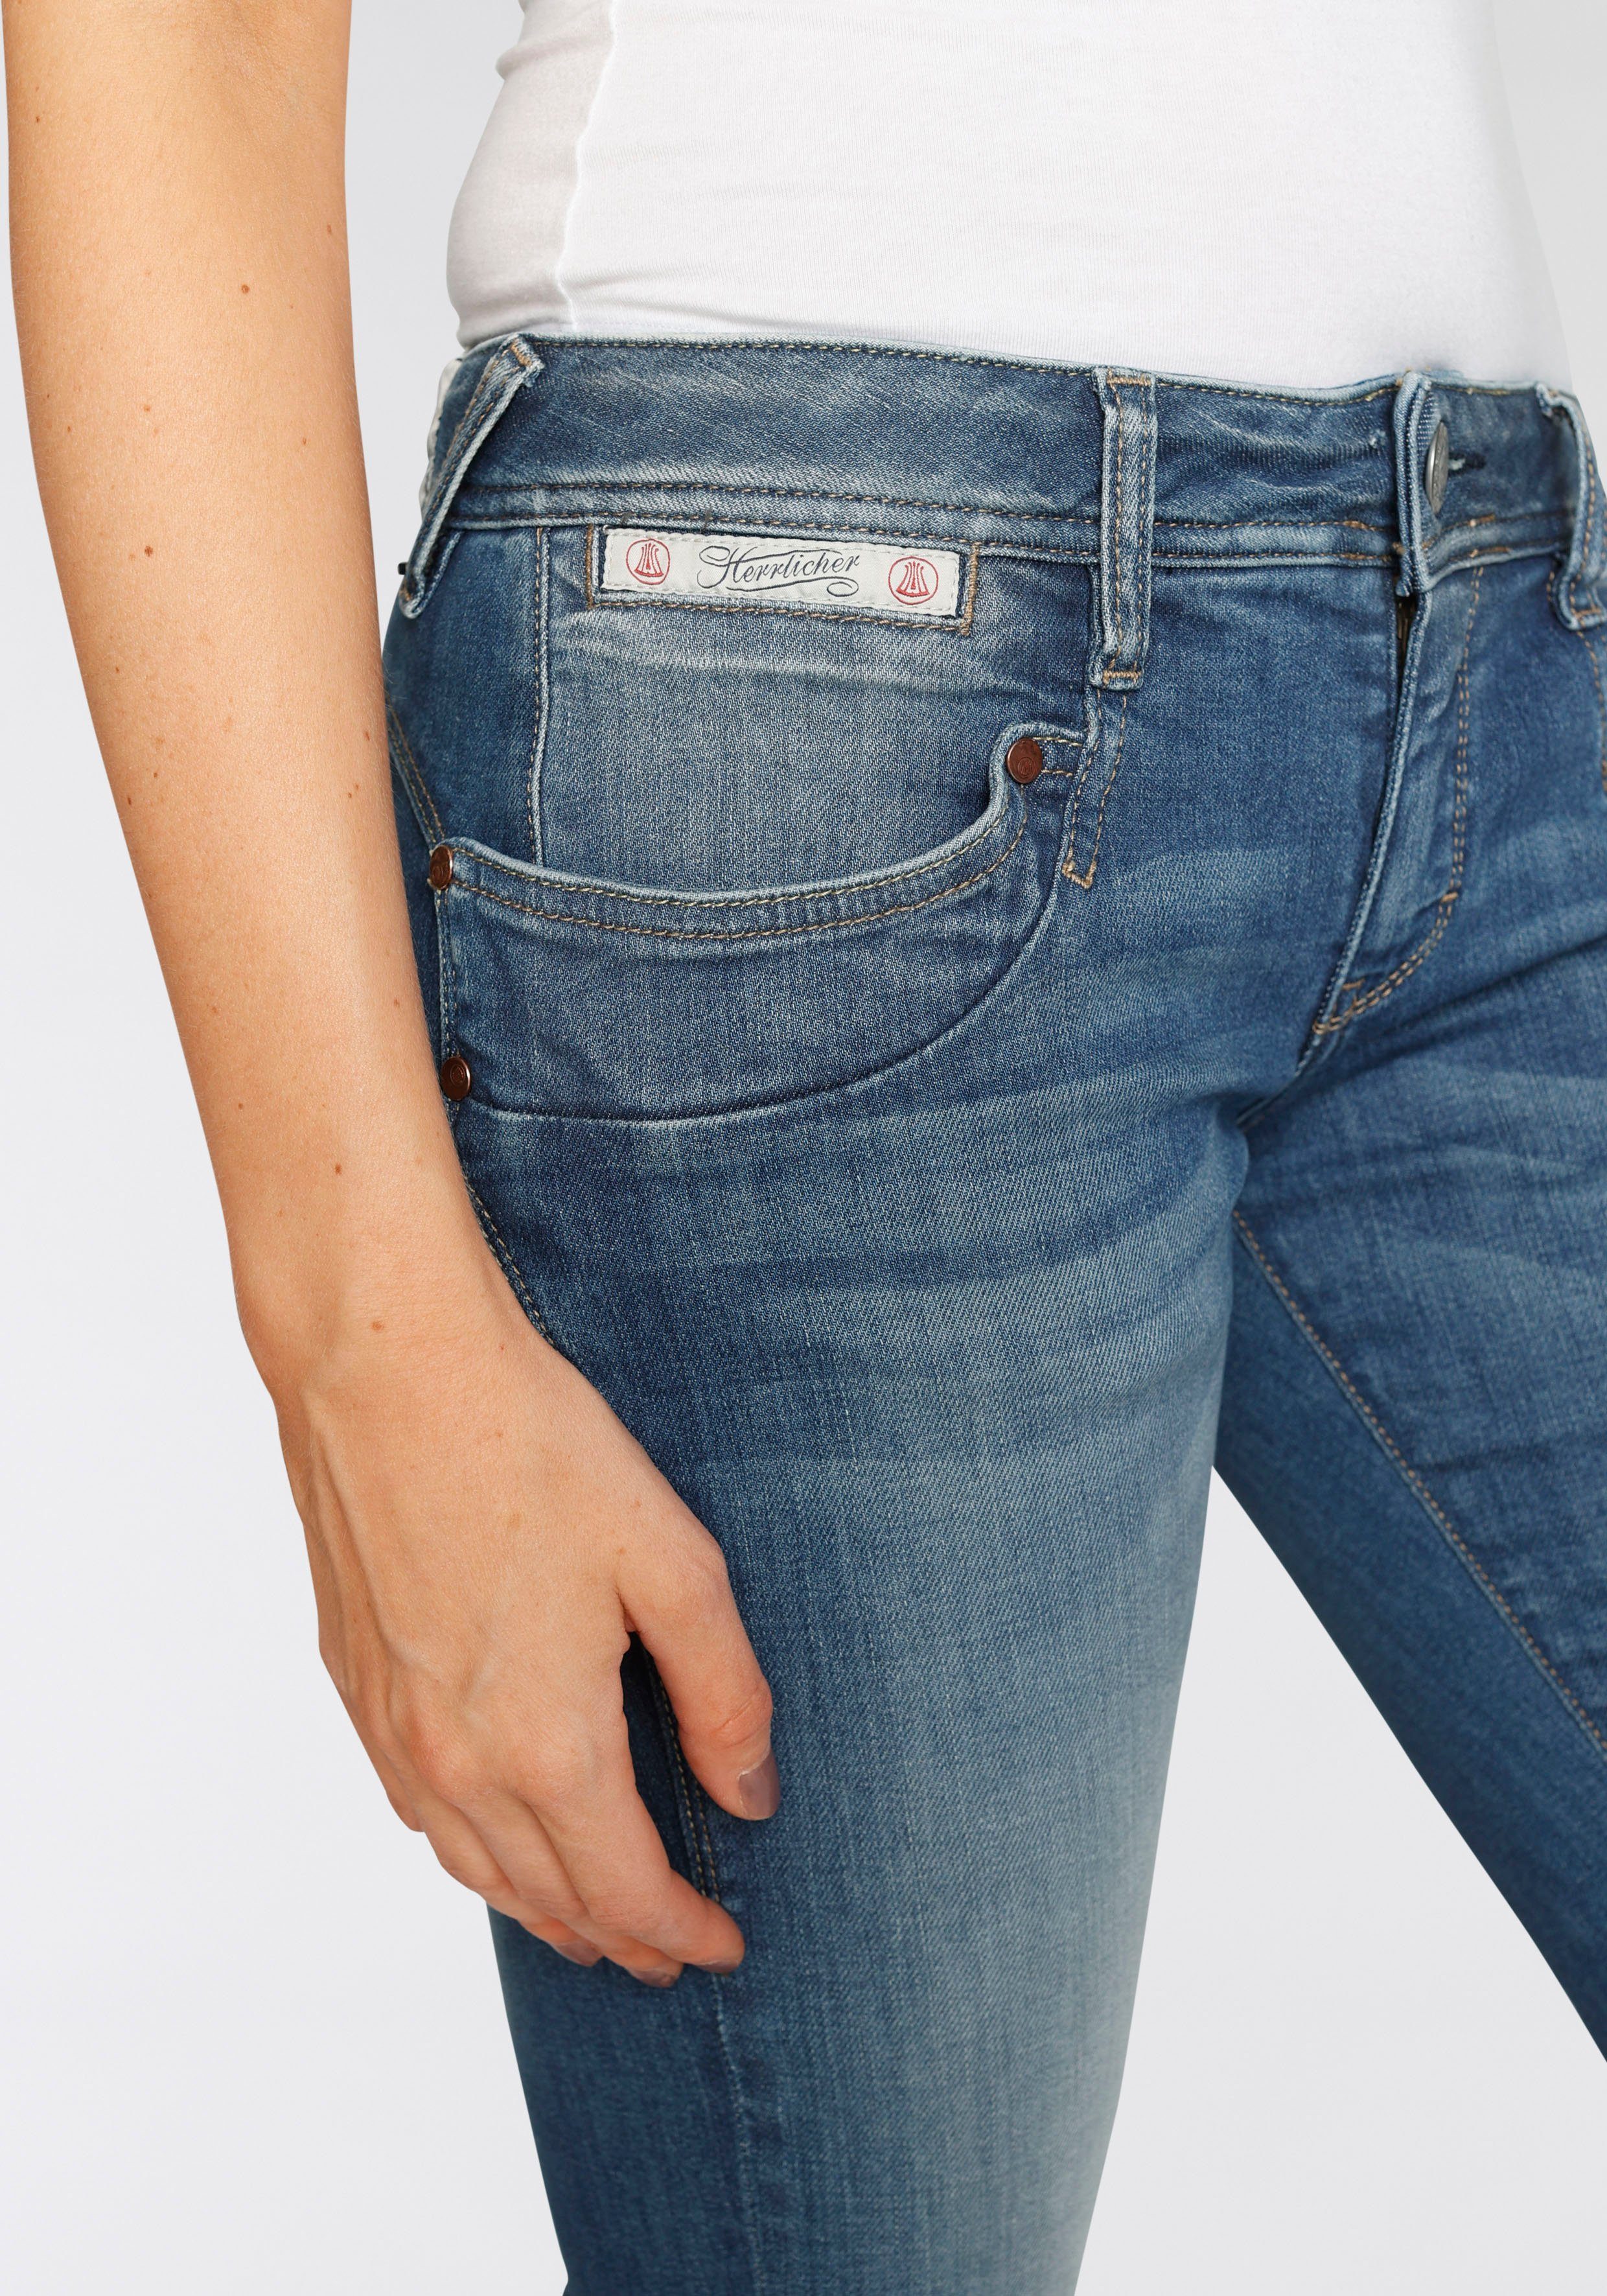 Kitotex umweltfreundlich SLIM Herrlicher PIPER Slim-fit-Jeans dank Technology ORGANIC